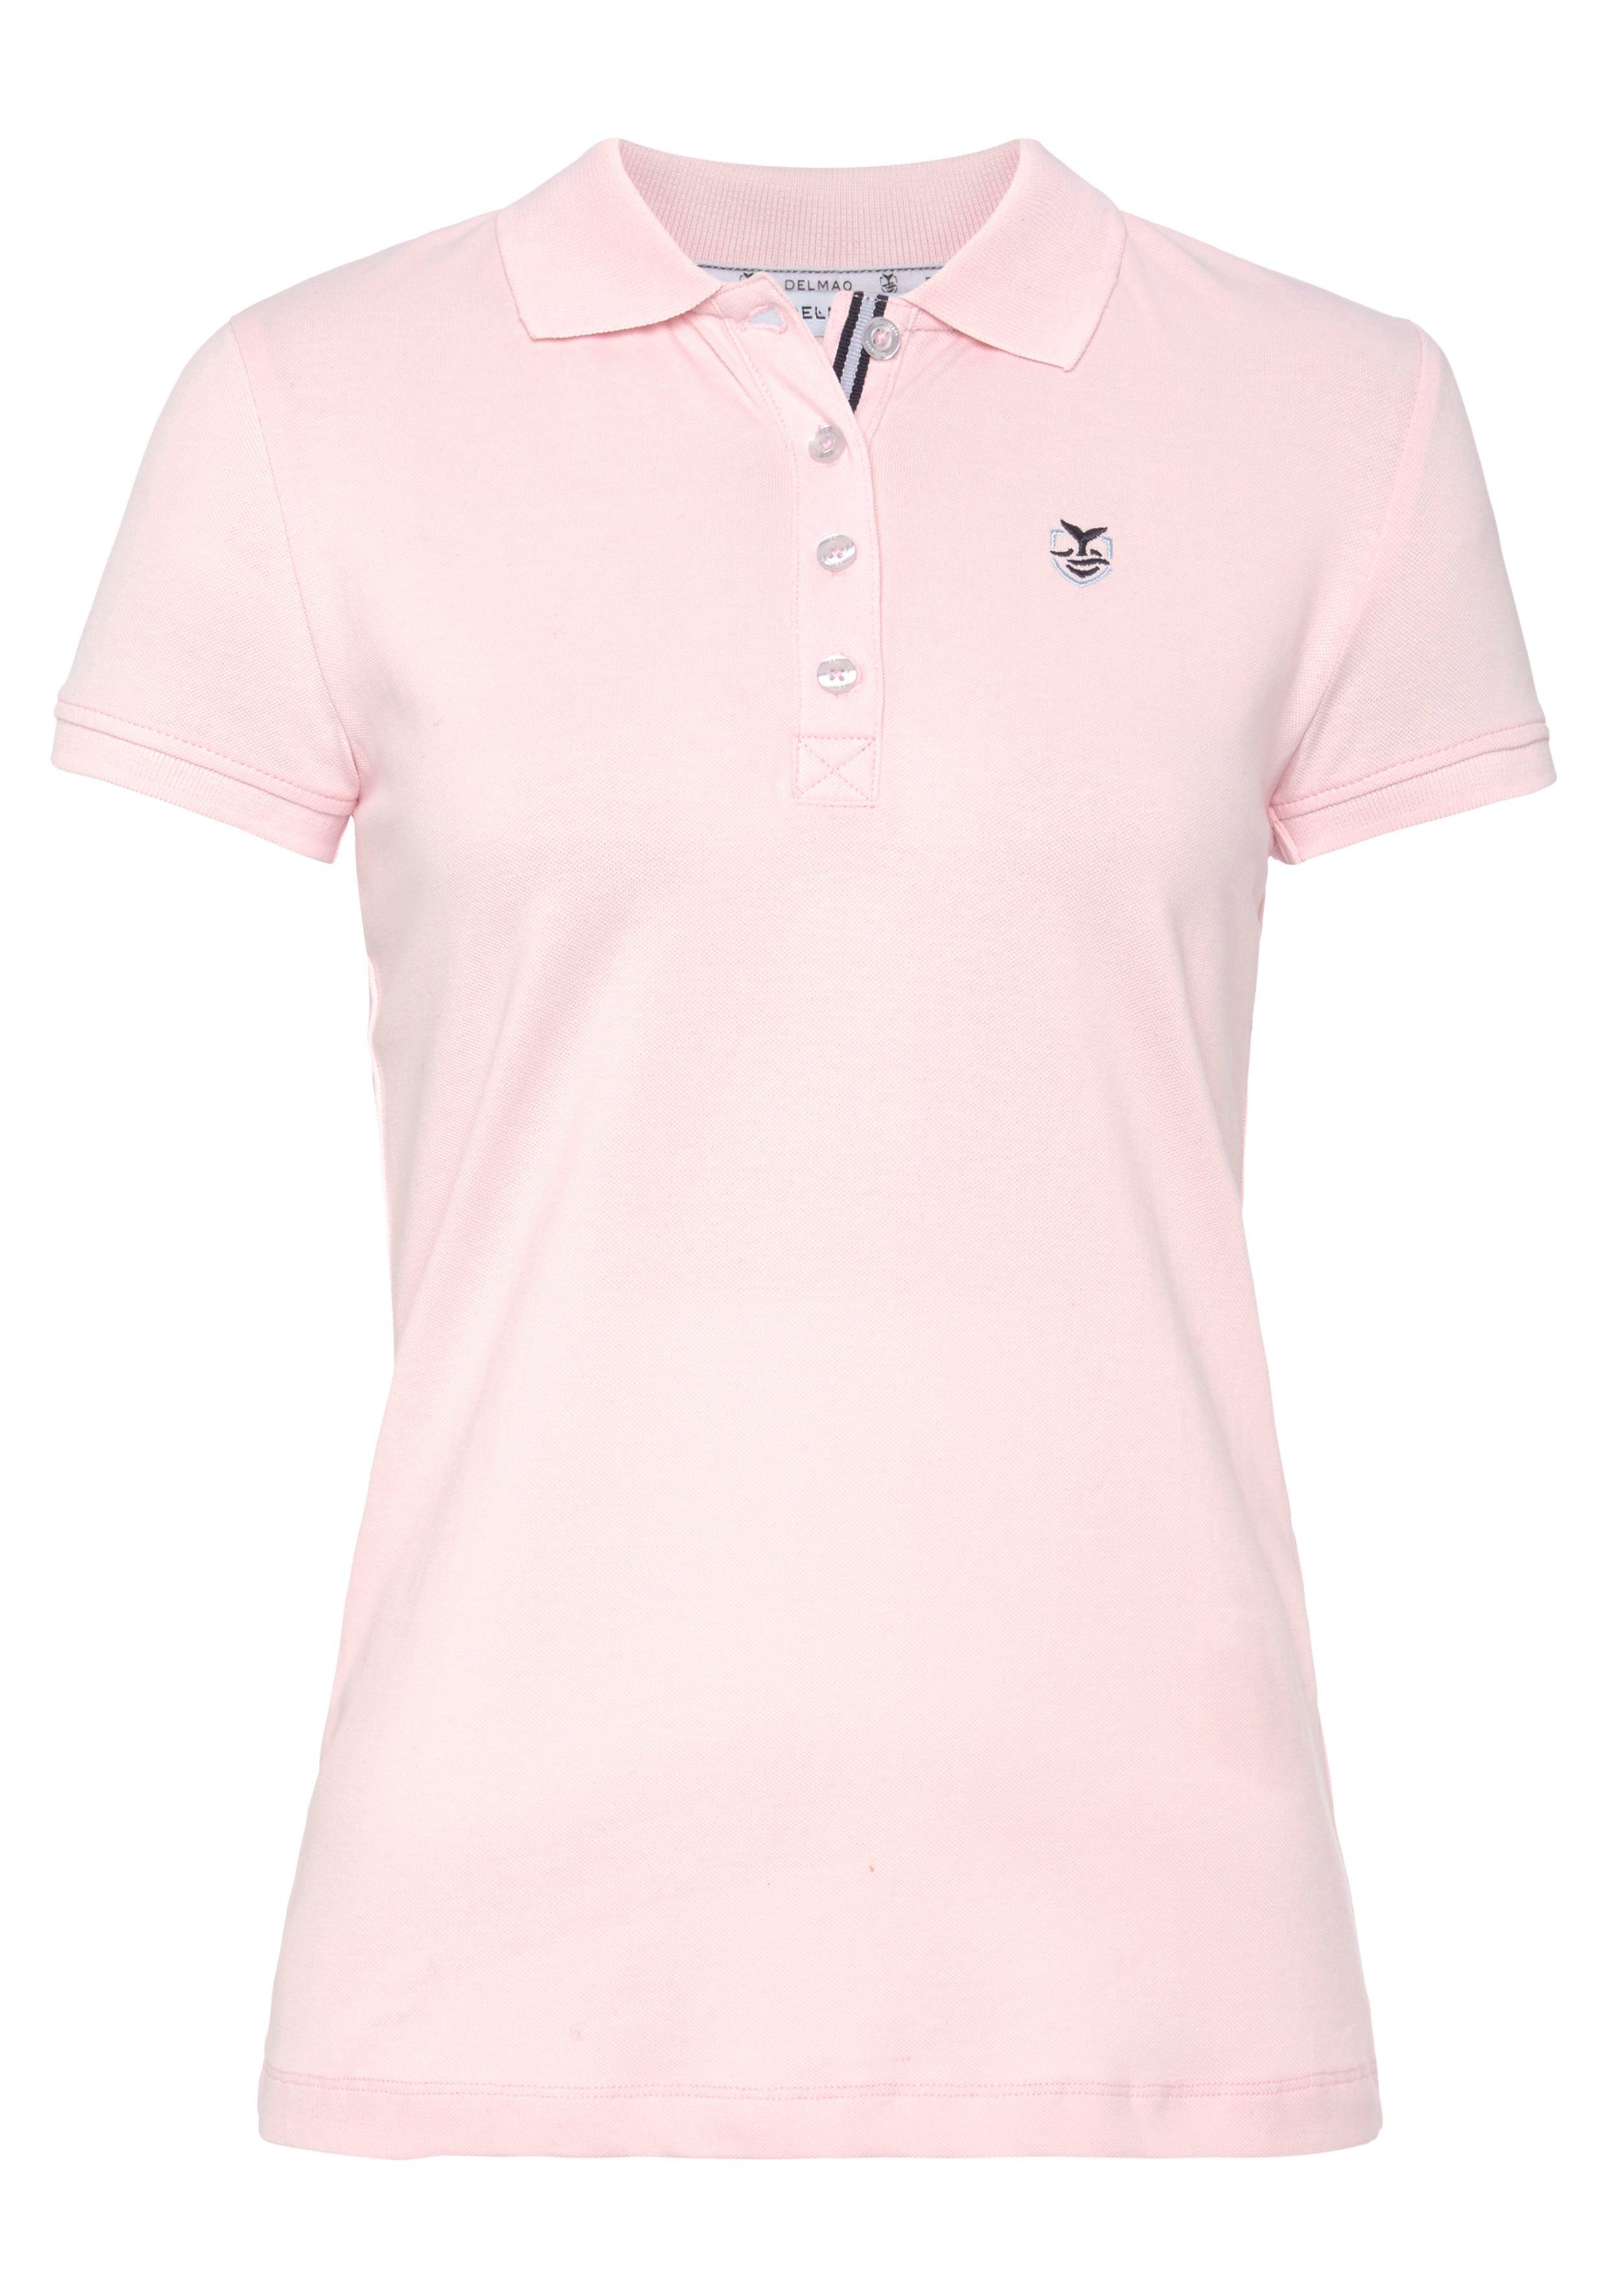 Farben verschiedenen klassischer Form - in MARKE! DELMAO NEUE Poloshirt rosa in